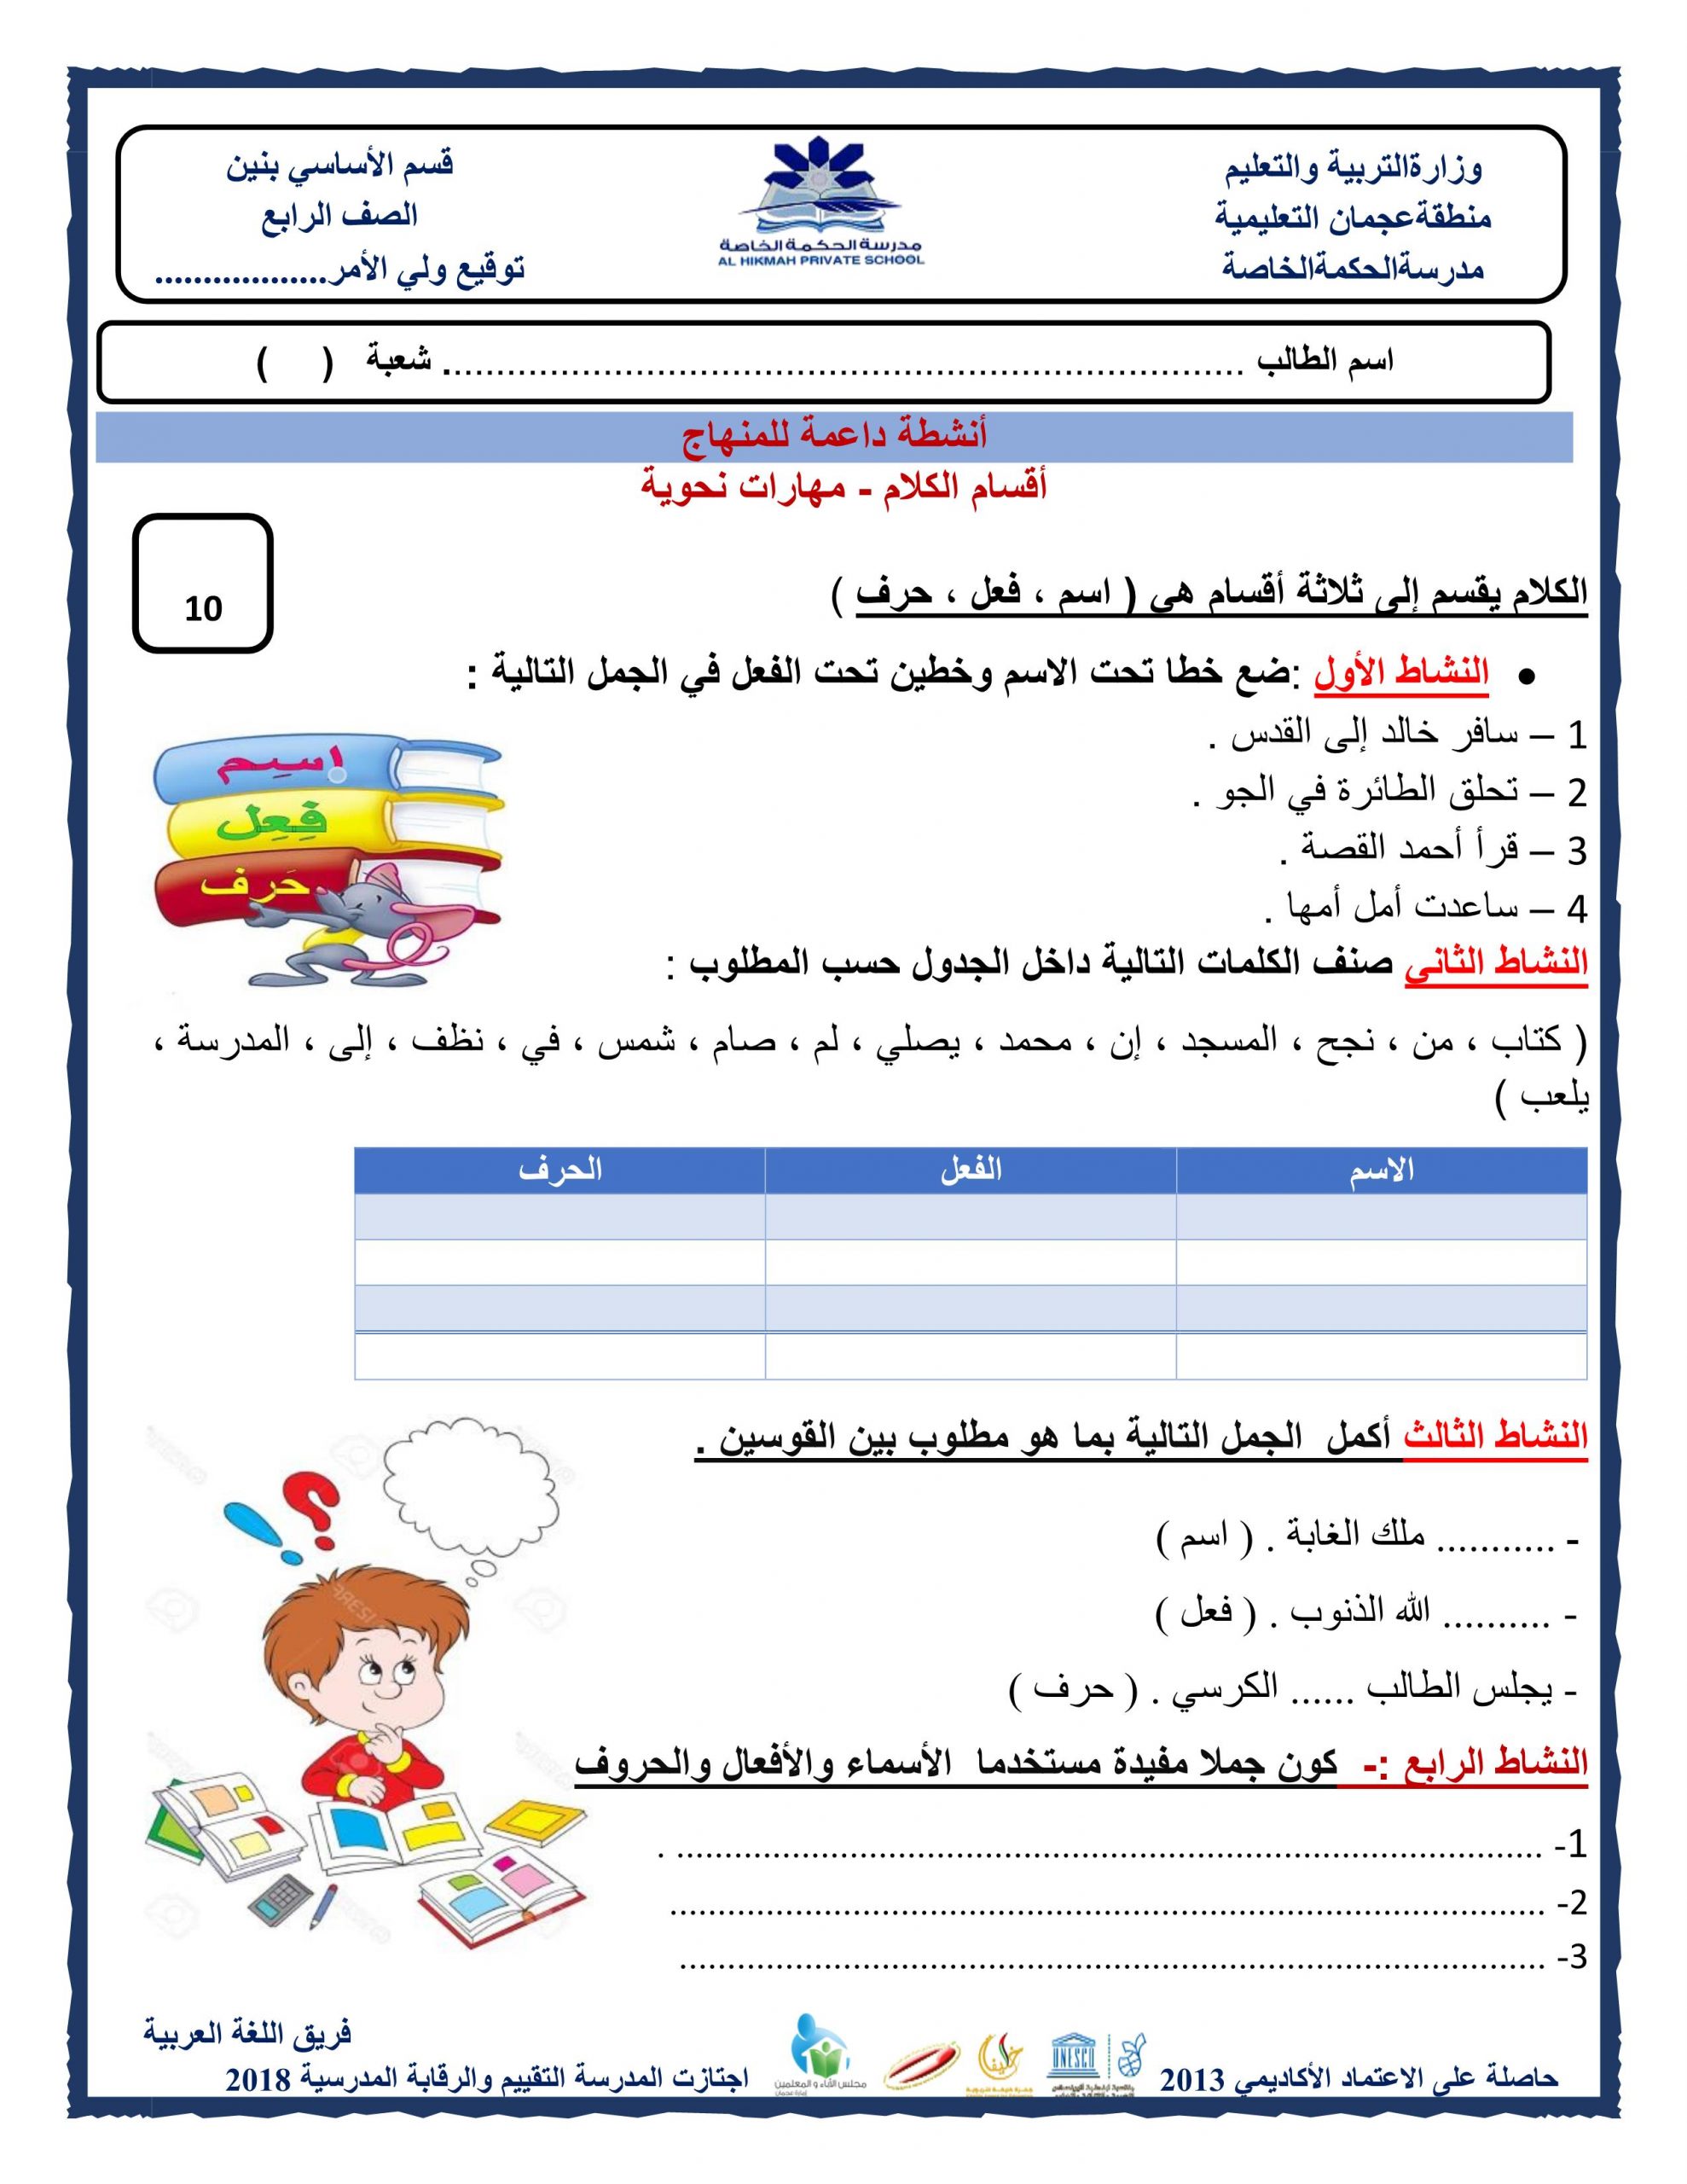 ورقة عمل أقسام الكلام مهارات نحوية الصف الرابع مادة اللغة العربية 